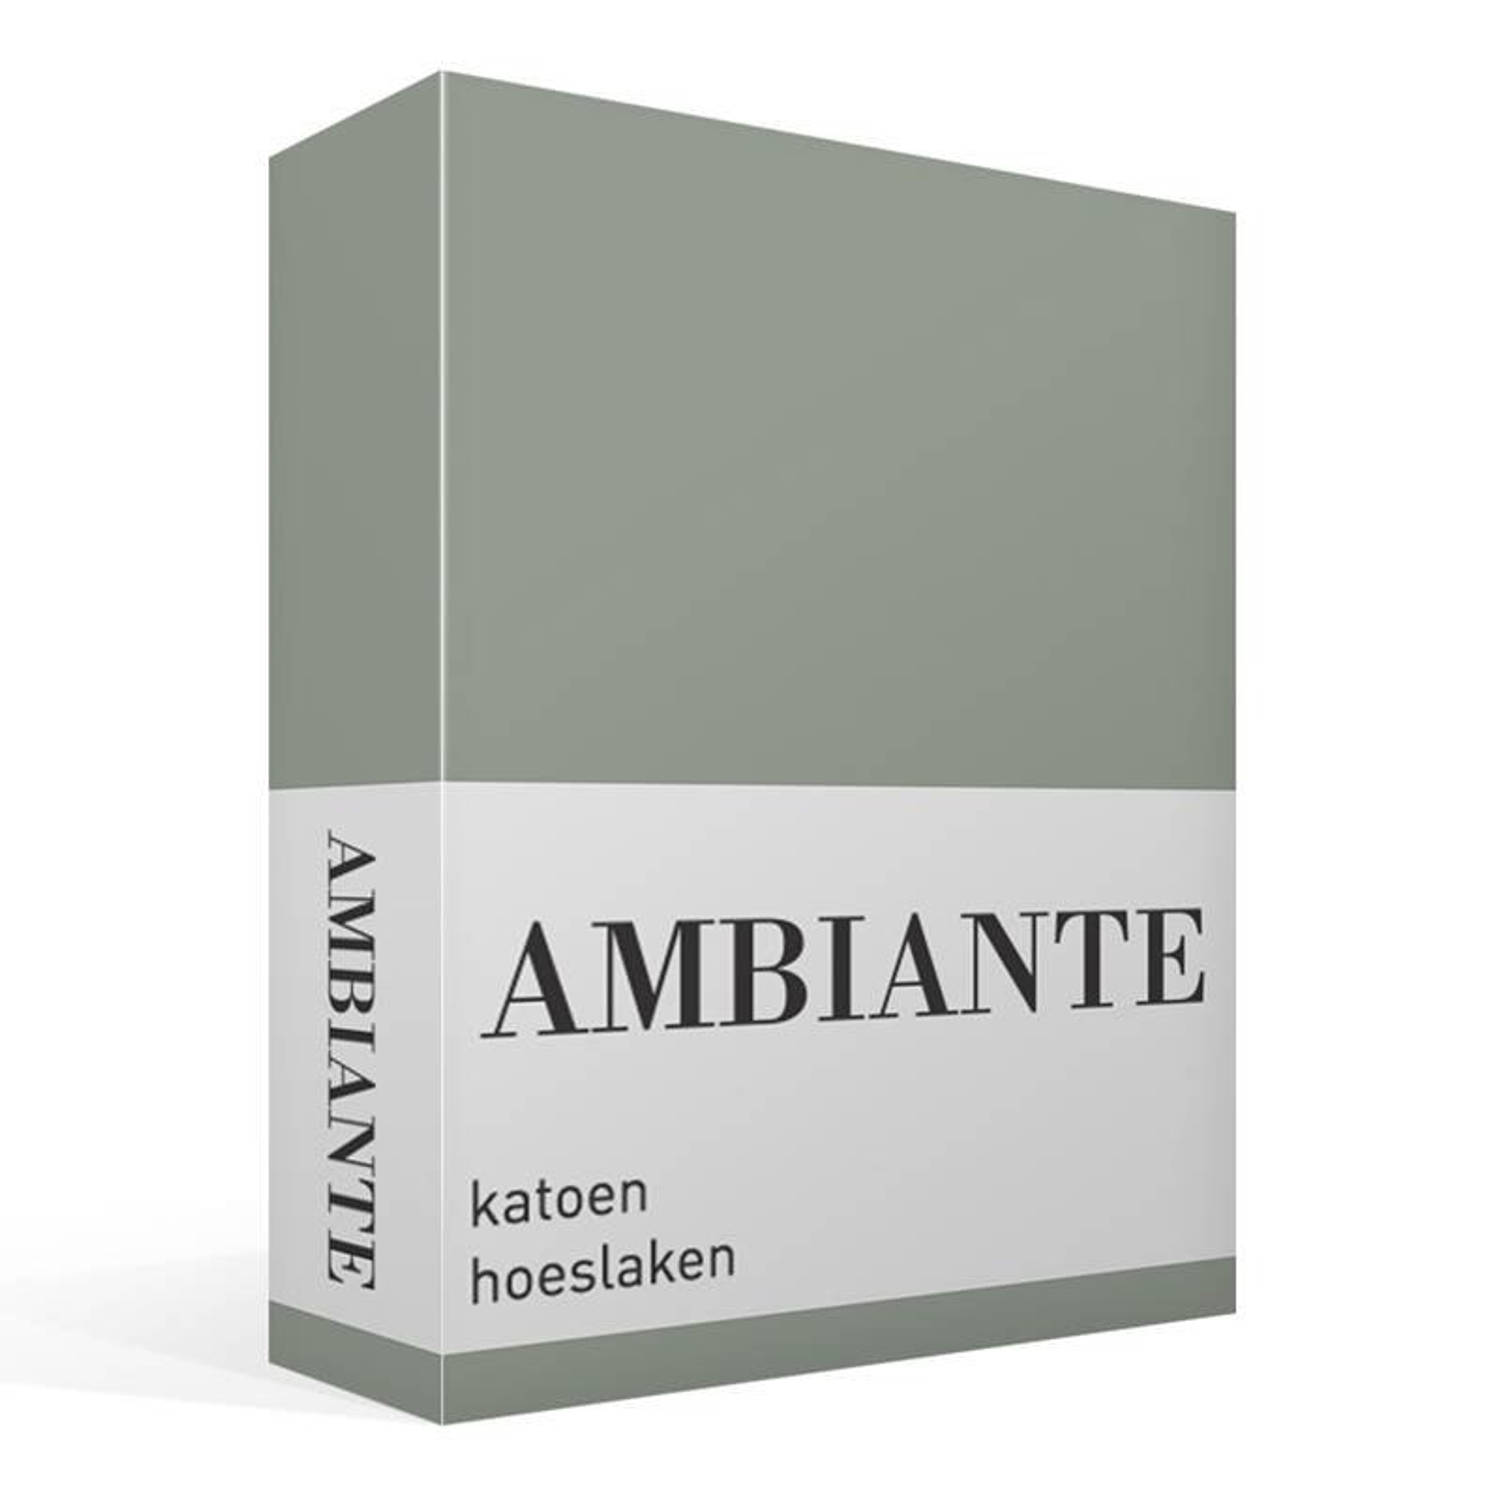 AMBIANTE Cotton Uni Hoeslaken - 100% Katoen - 1-persoons (80x200 Cm) - Green - Groen